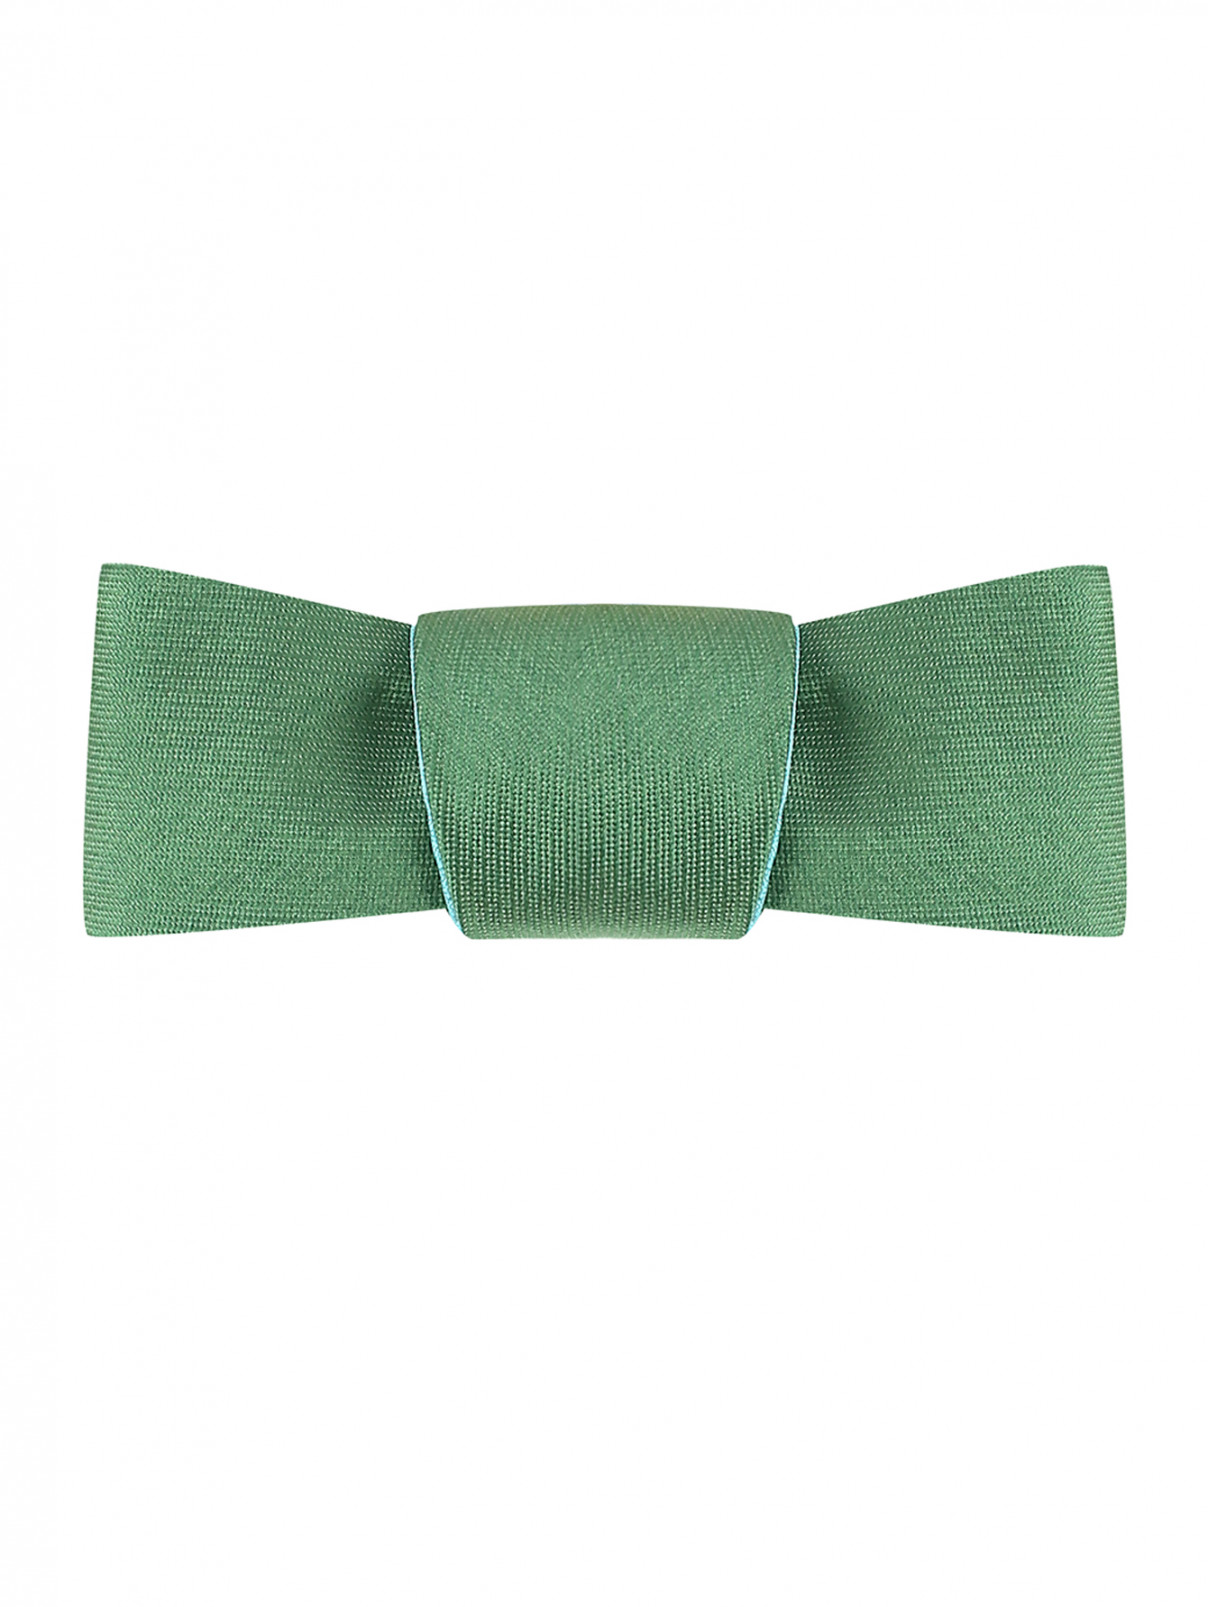 Двухсторонний галстук из шелковистого материала MiMiSol  –  Общий вид  – Цвет:  Зеленый